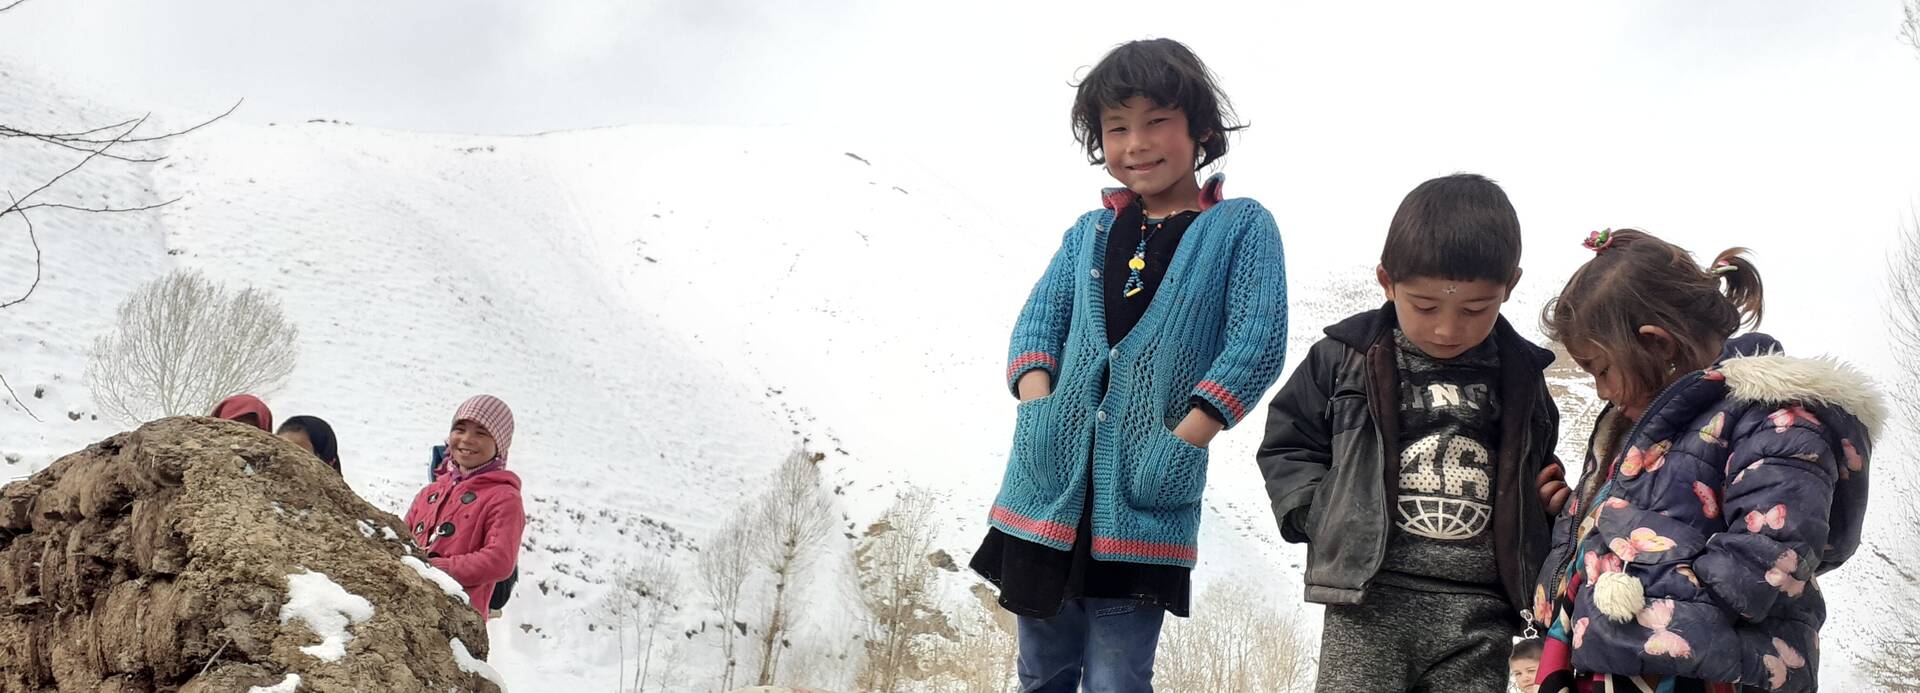 Kinder stehen auf einem schneebedecktem Hügel